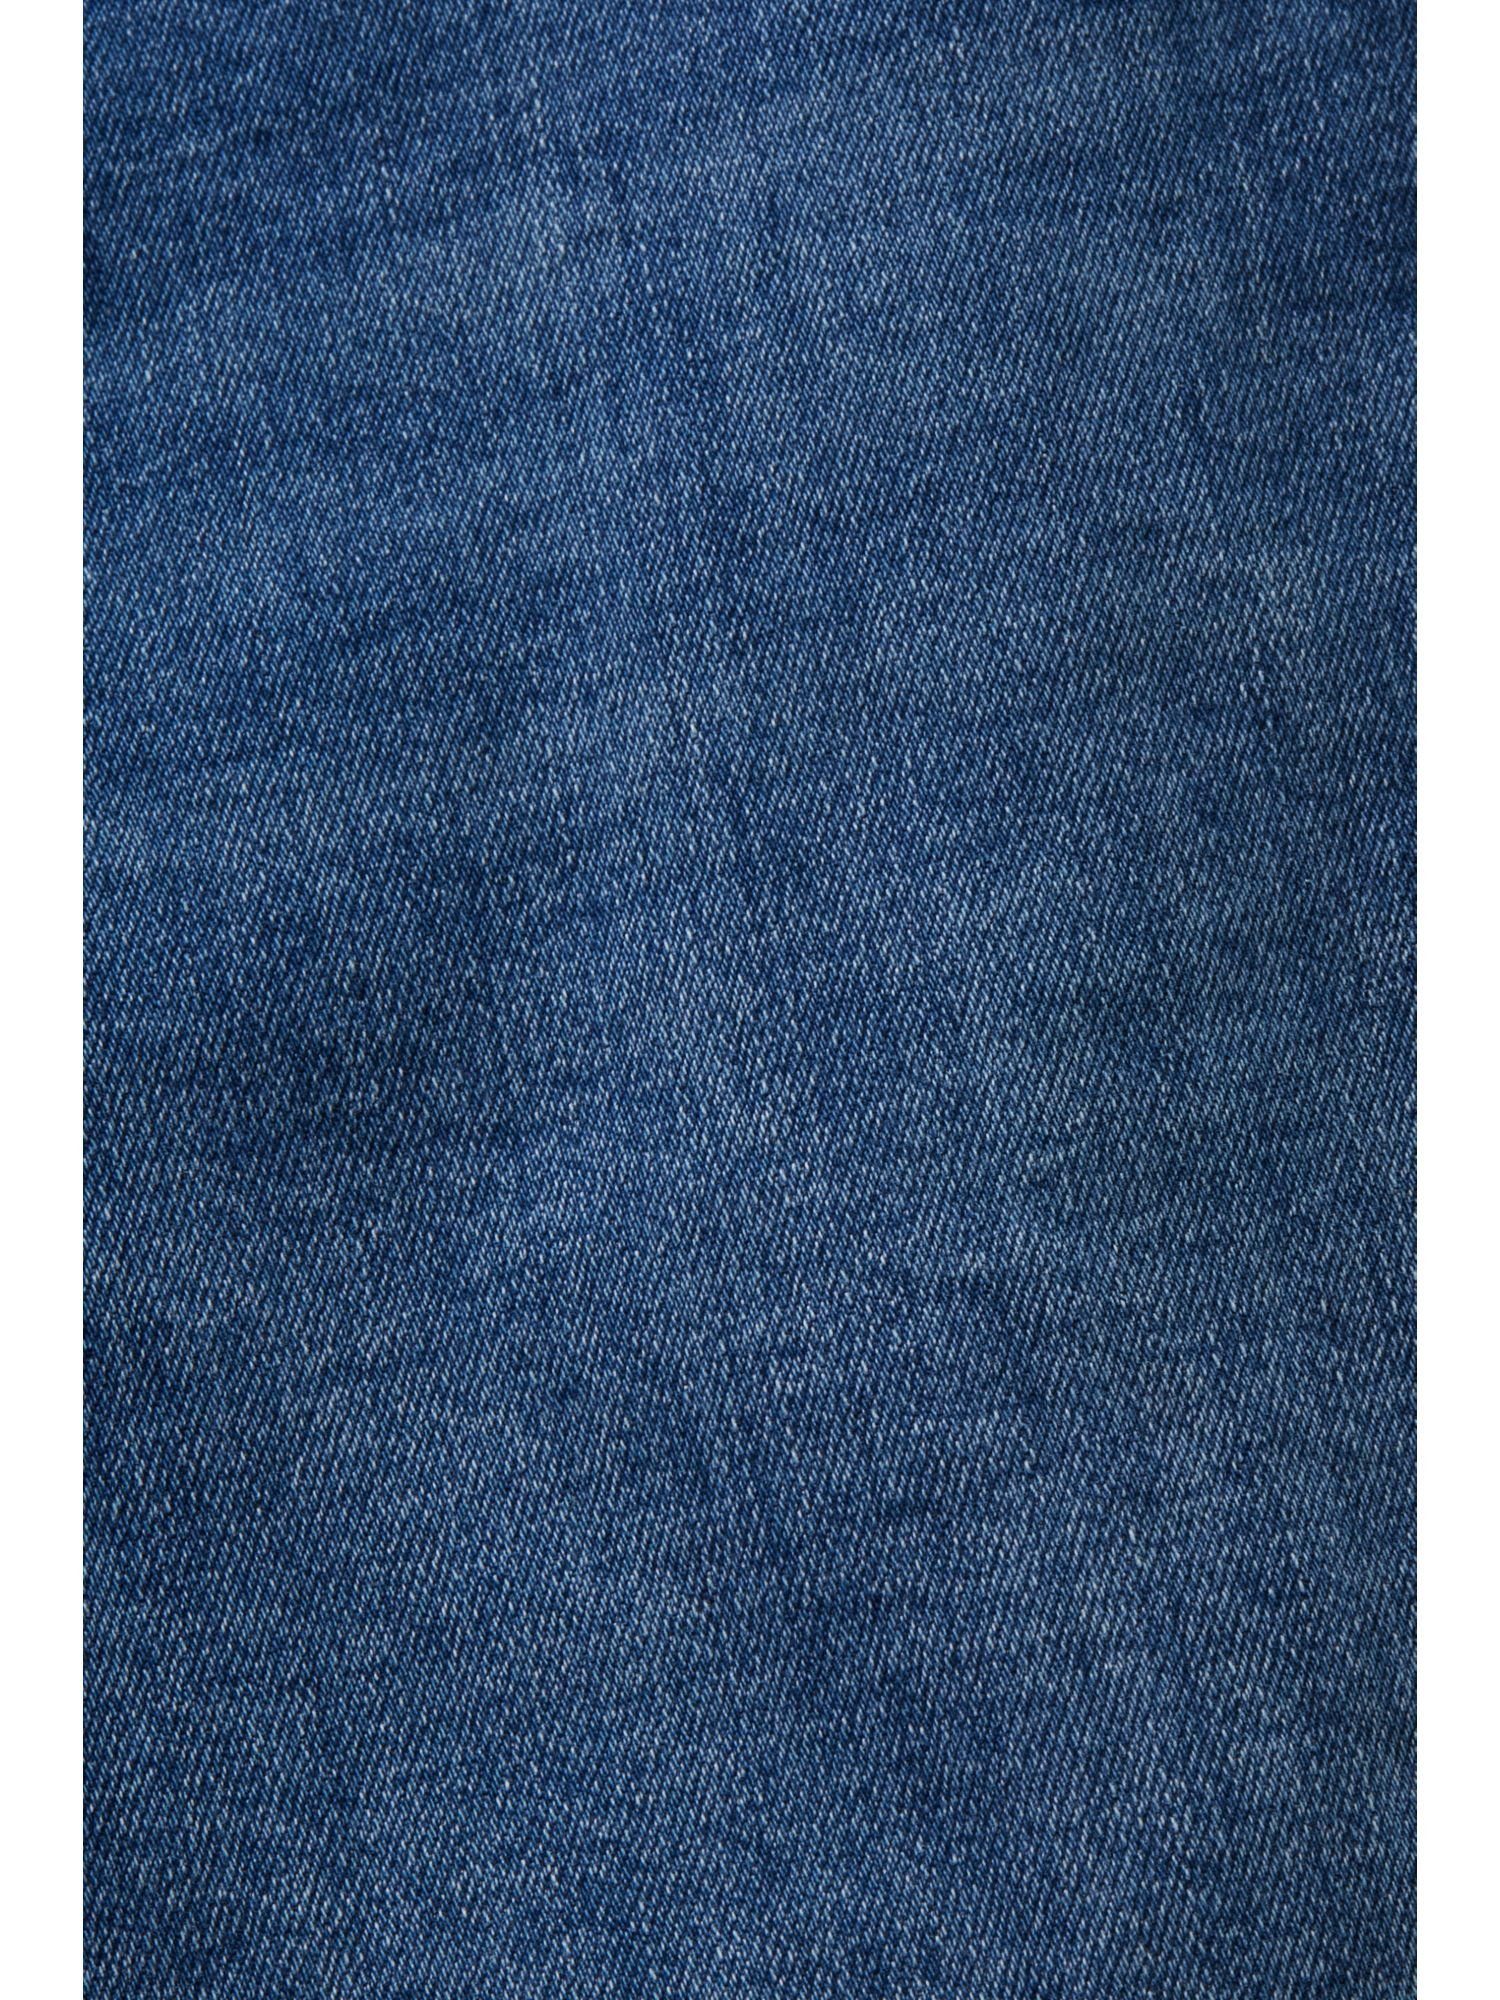 Esprit Bootcut-Jeans Premium-Bootcut Jeans mit Bund hohem